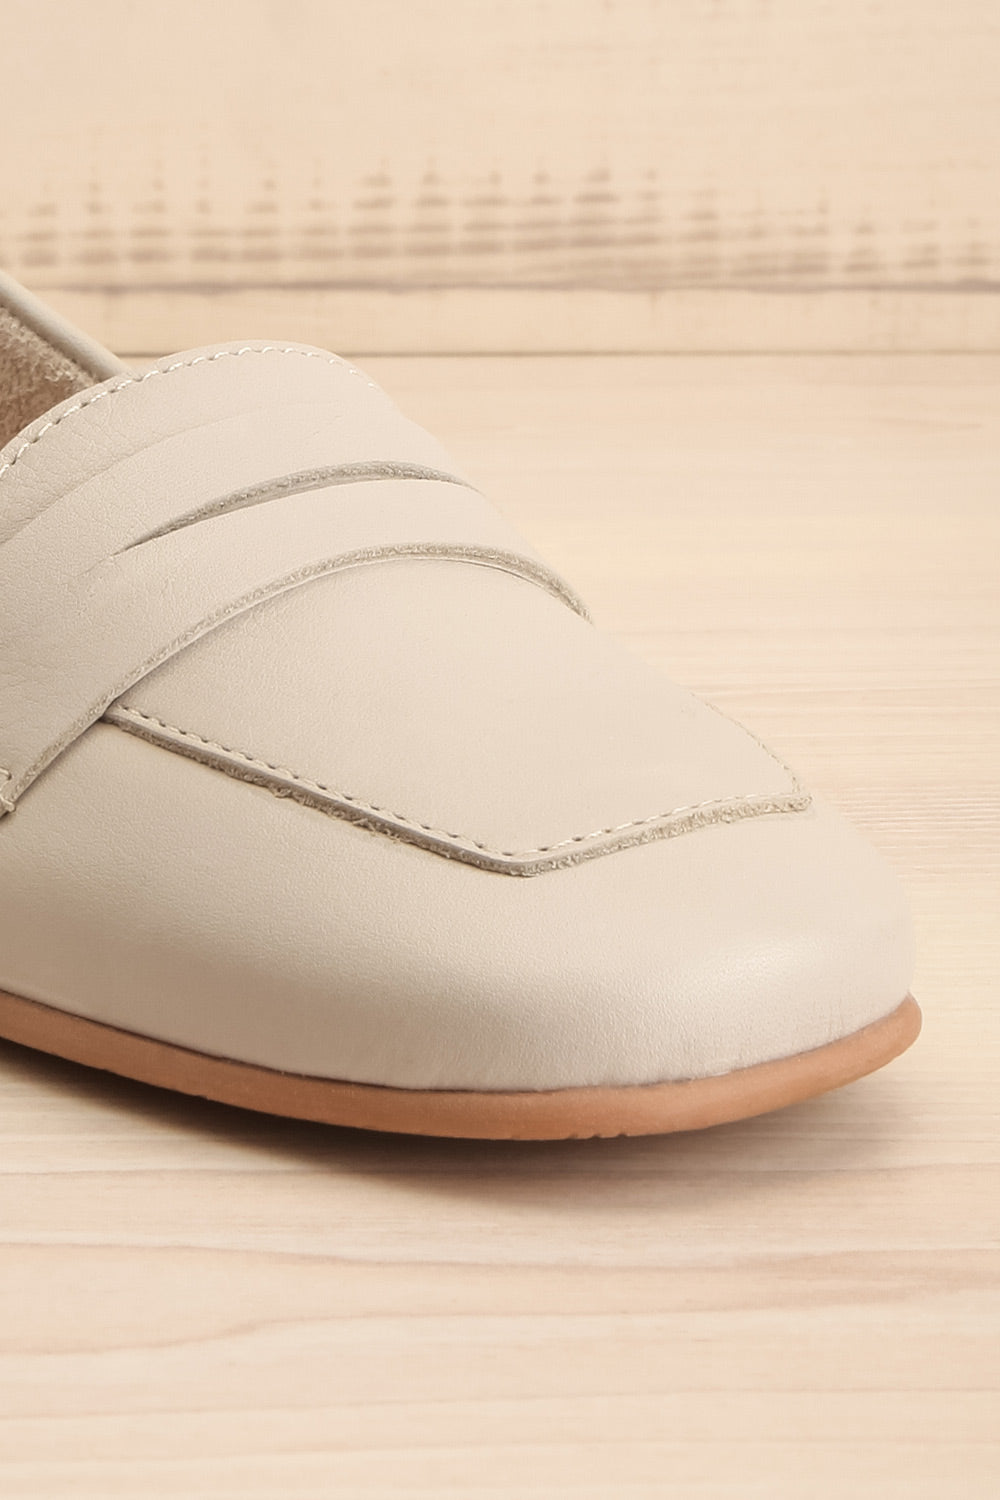 Faith Grey Leather Loafers | La petite garçonne front close-up